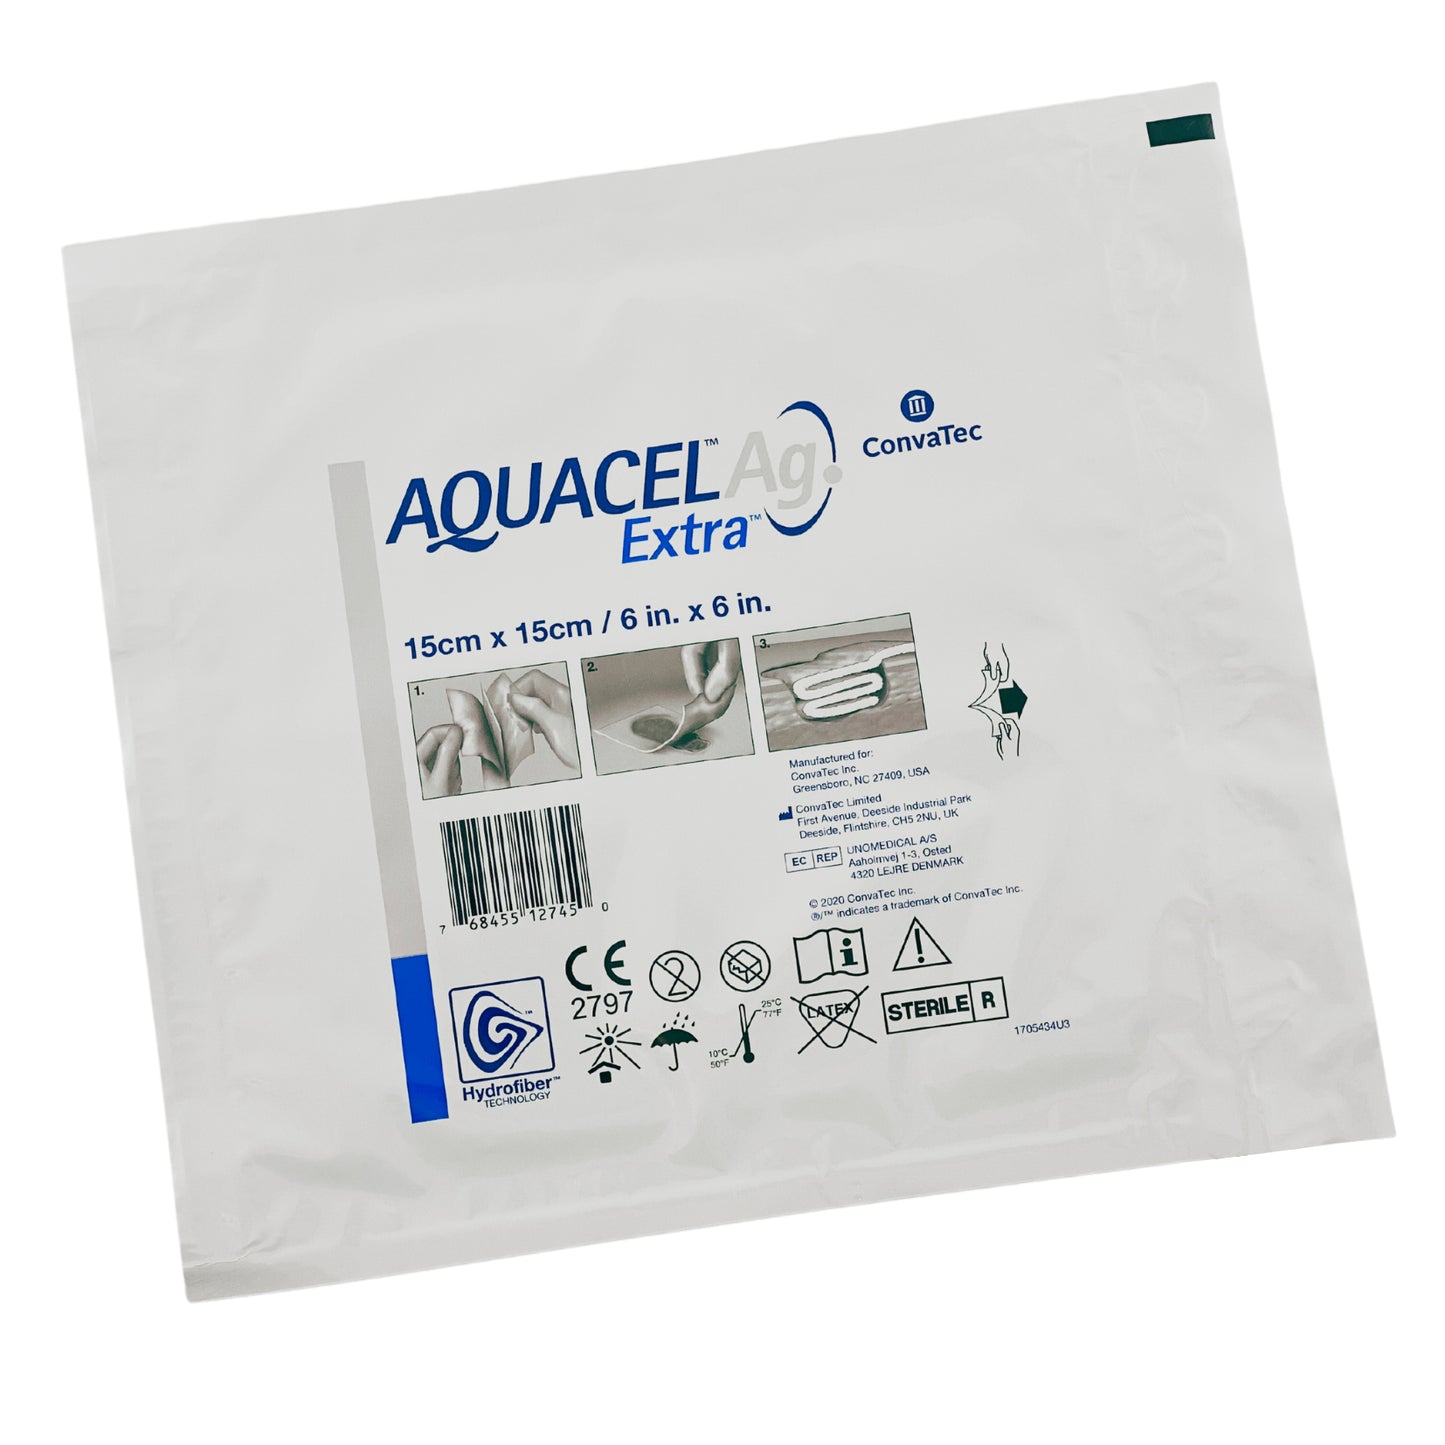 Aquacel Ag Extra Wound Dressing (1)